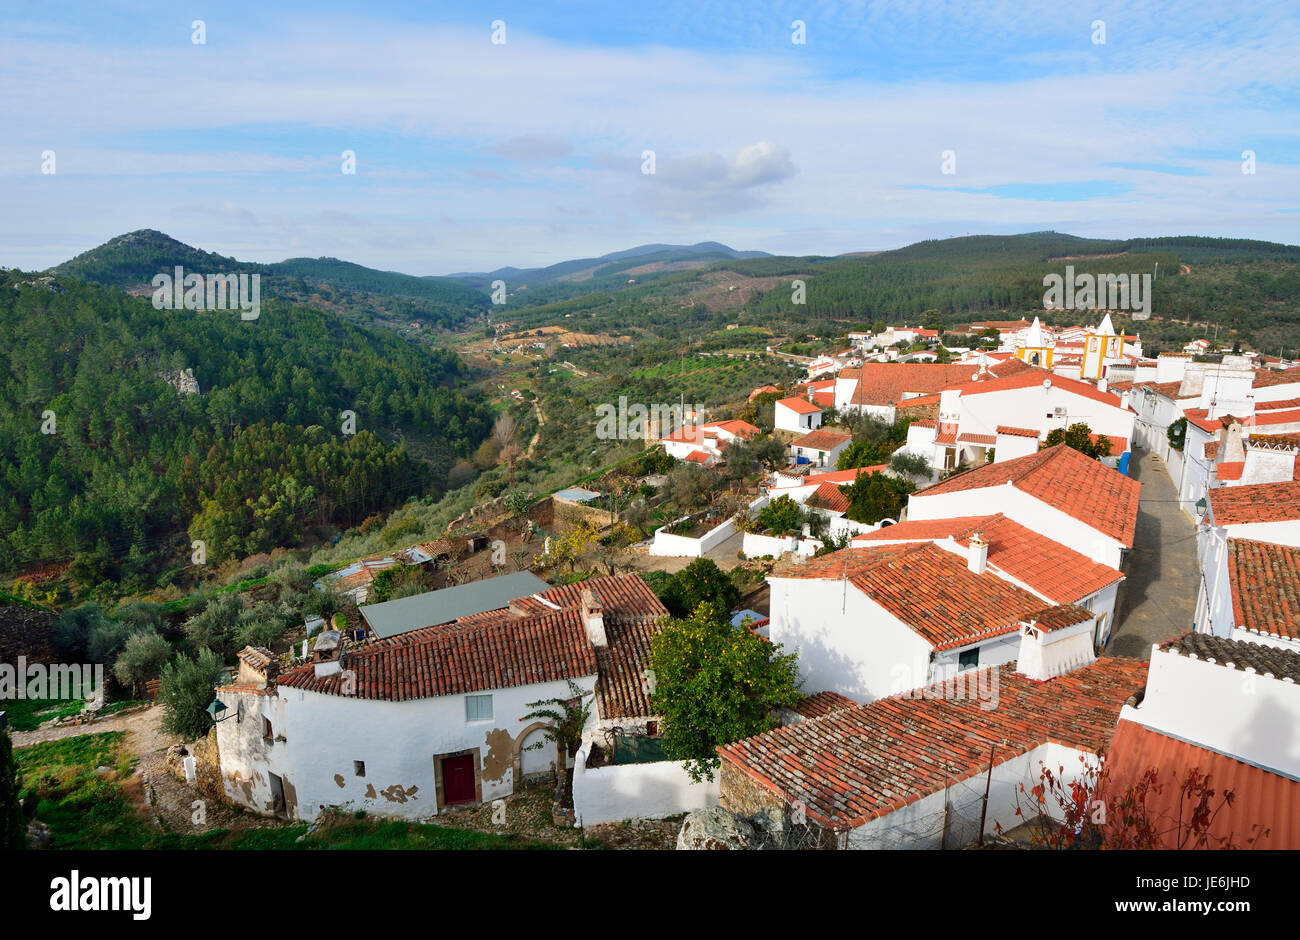 El pueblo histórico de Alegrete. Alentejo, Portugal Foto de stock